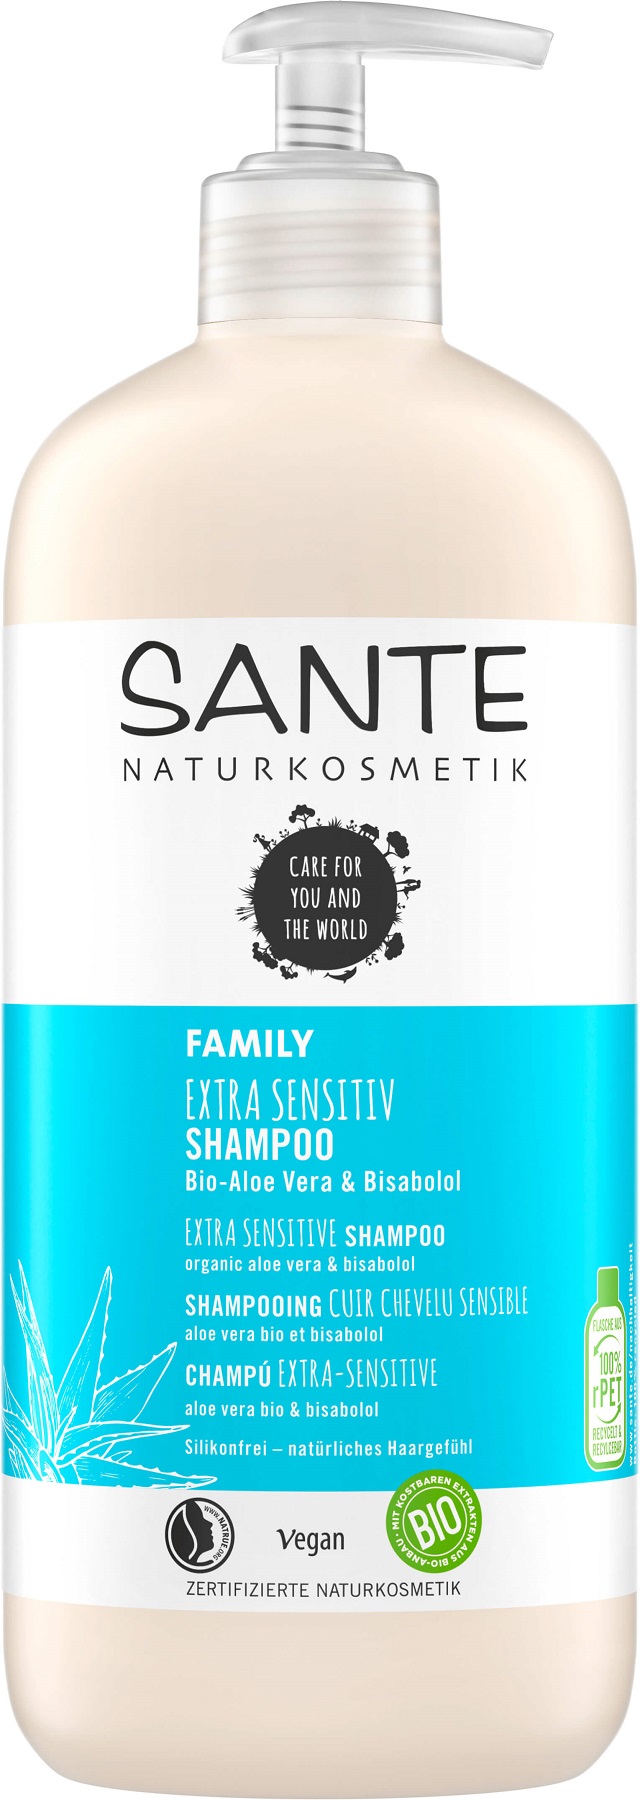 Šampon extra sensitive Bio-Aloe Vera a Bisabolol - 500ml